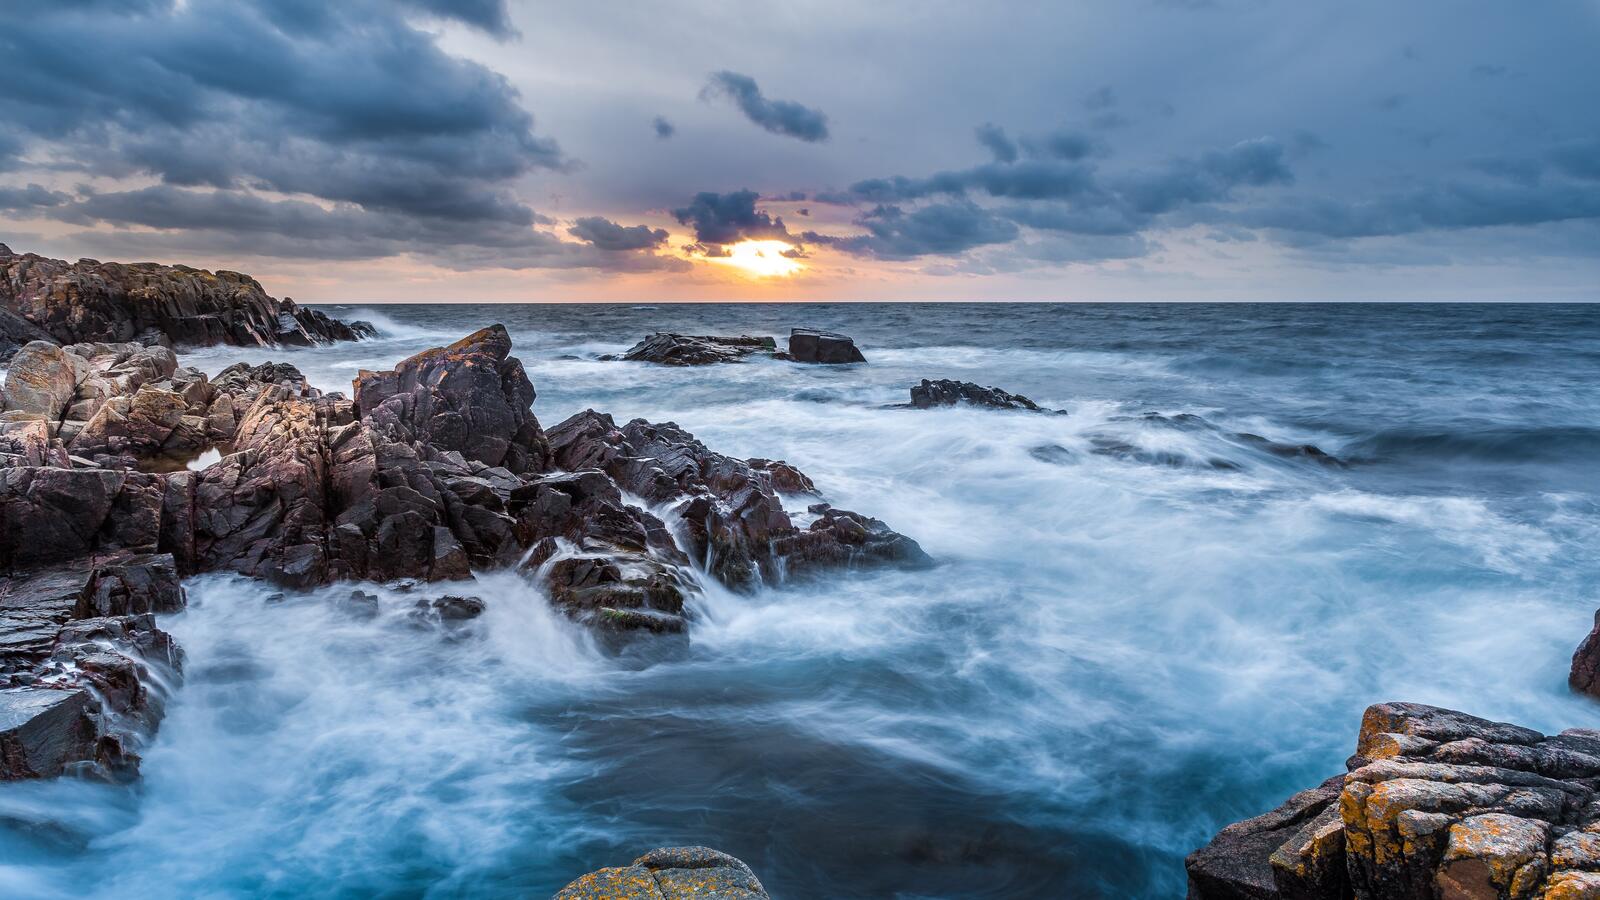 Бесплатное фото Во время восхода волны разбиваются о скалистый берег